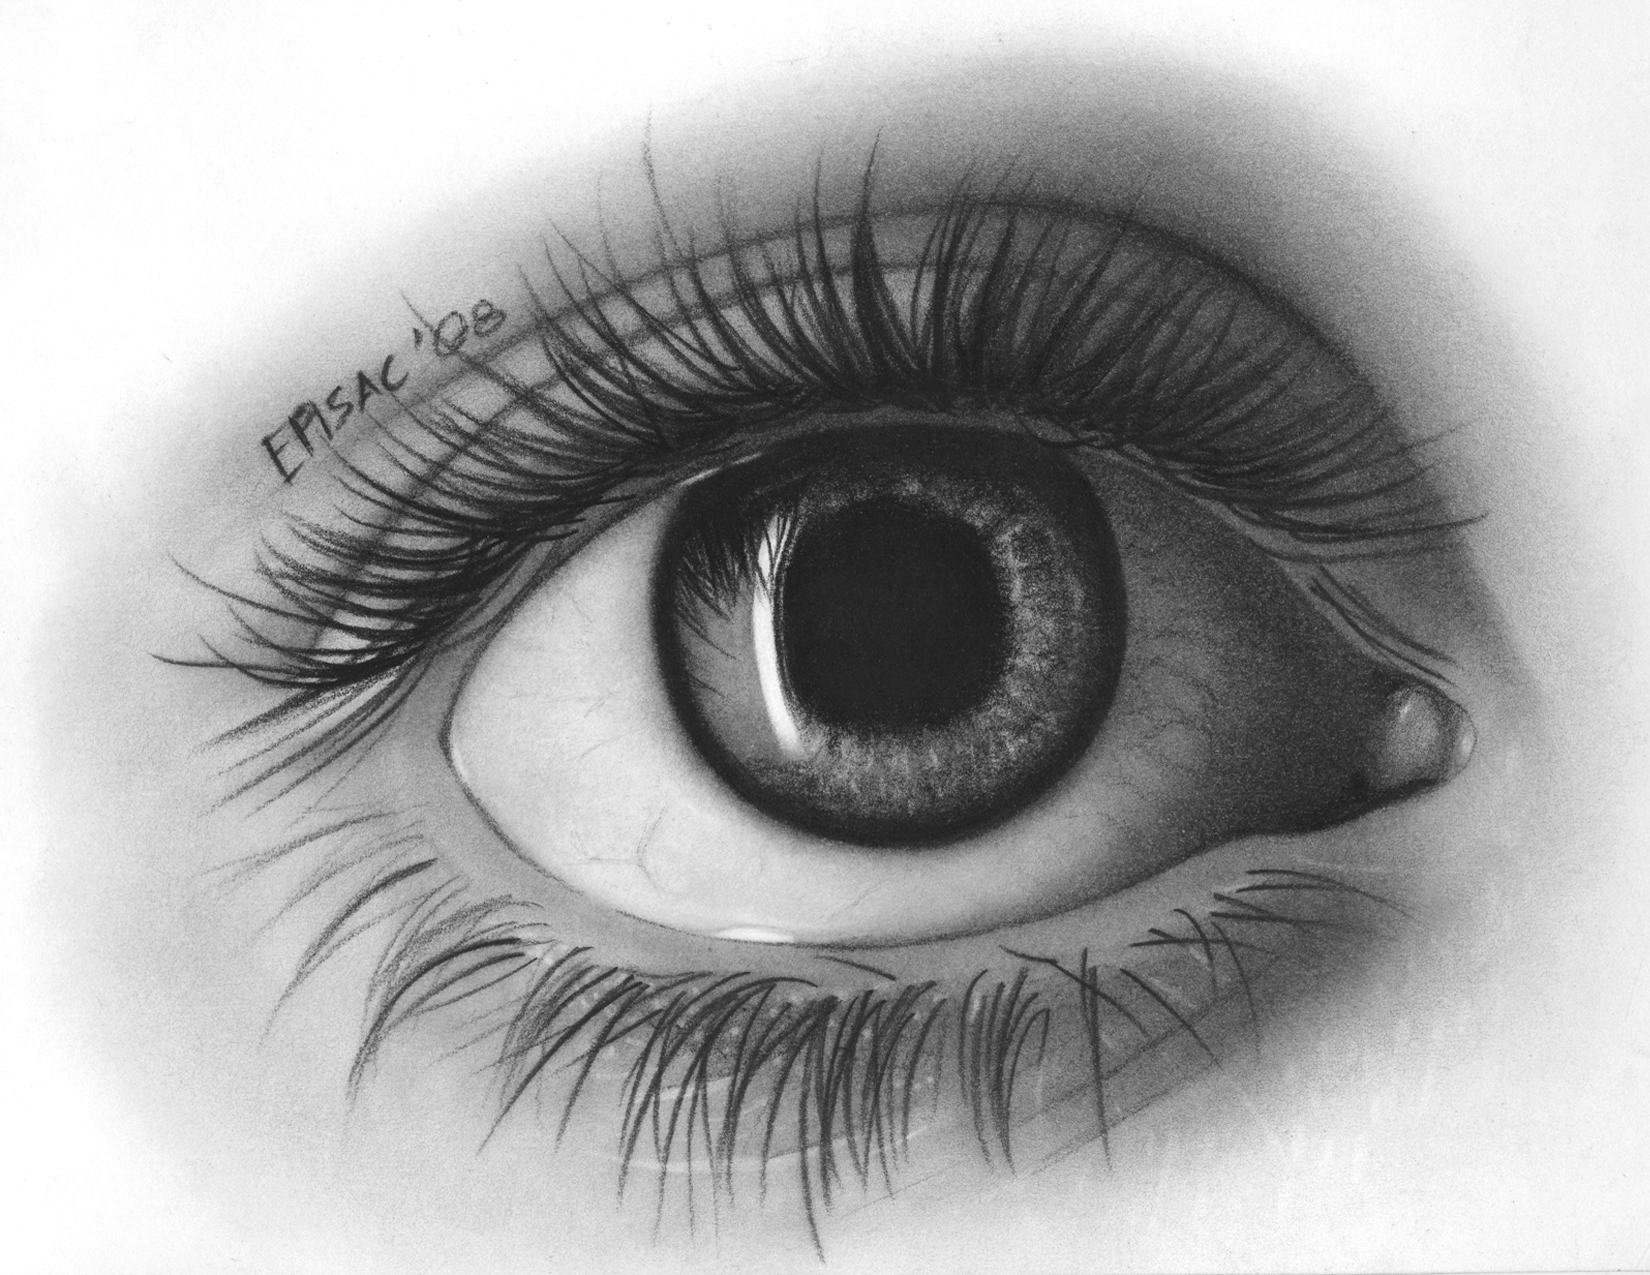 Image:eye_drawing_by_episac.jpg